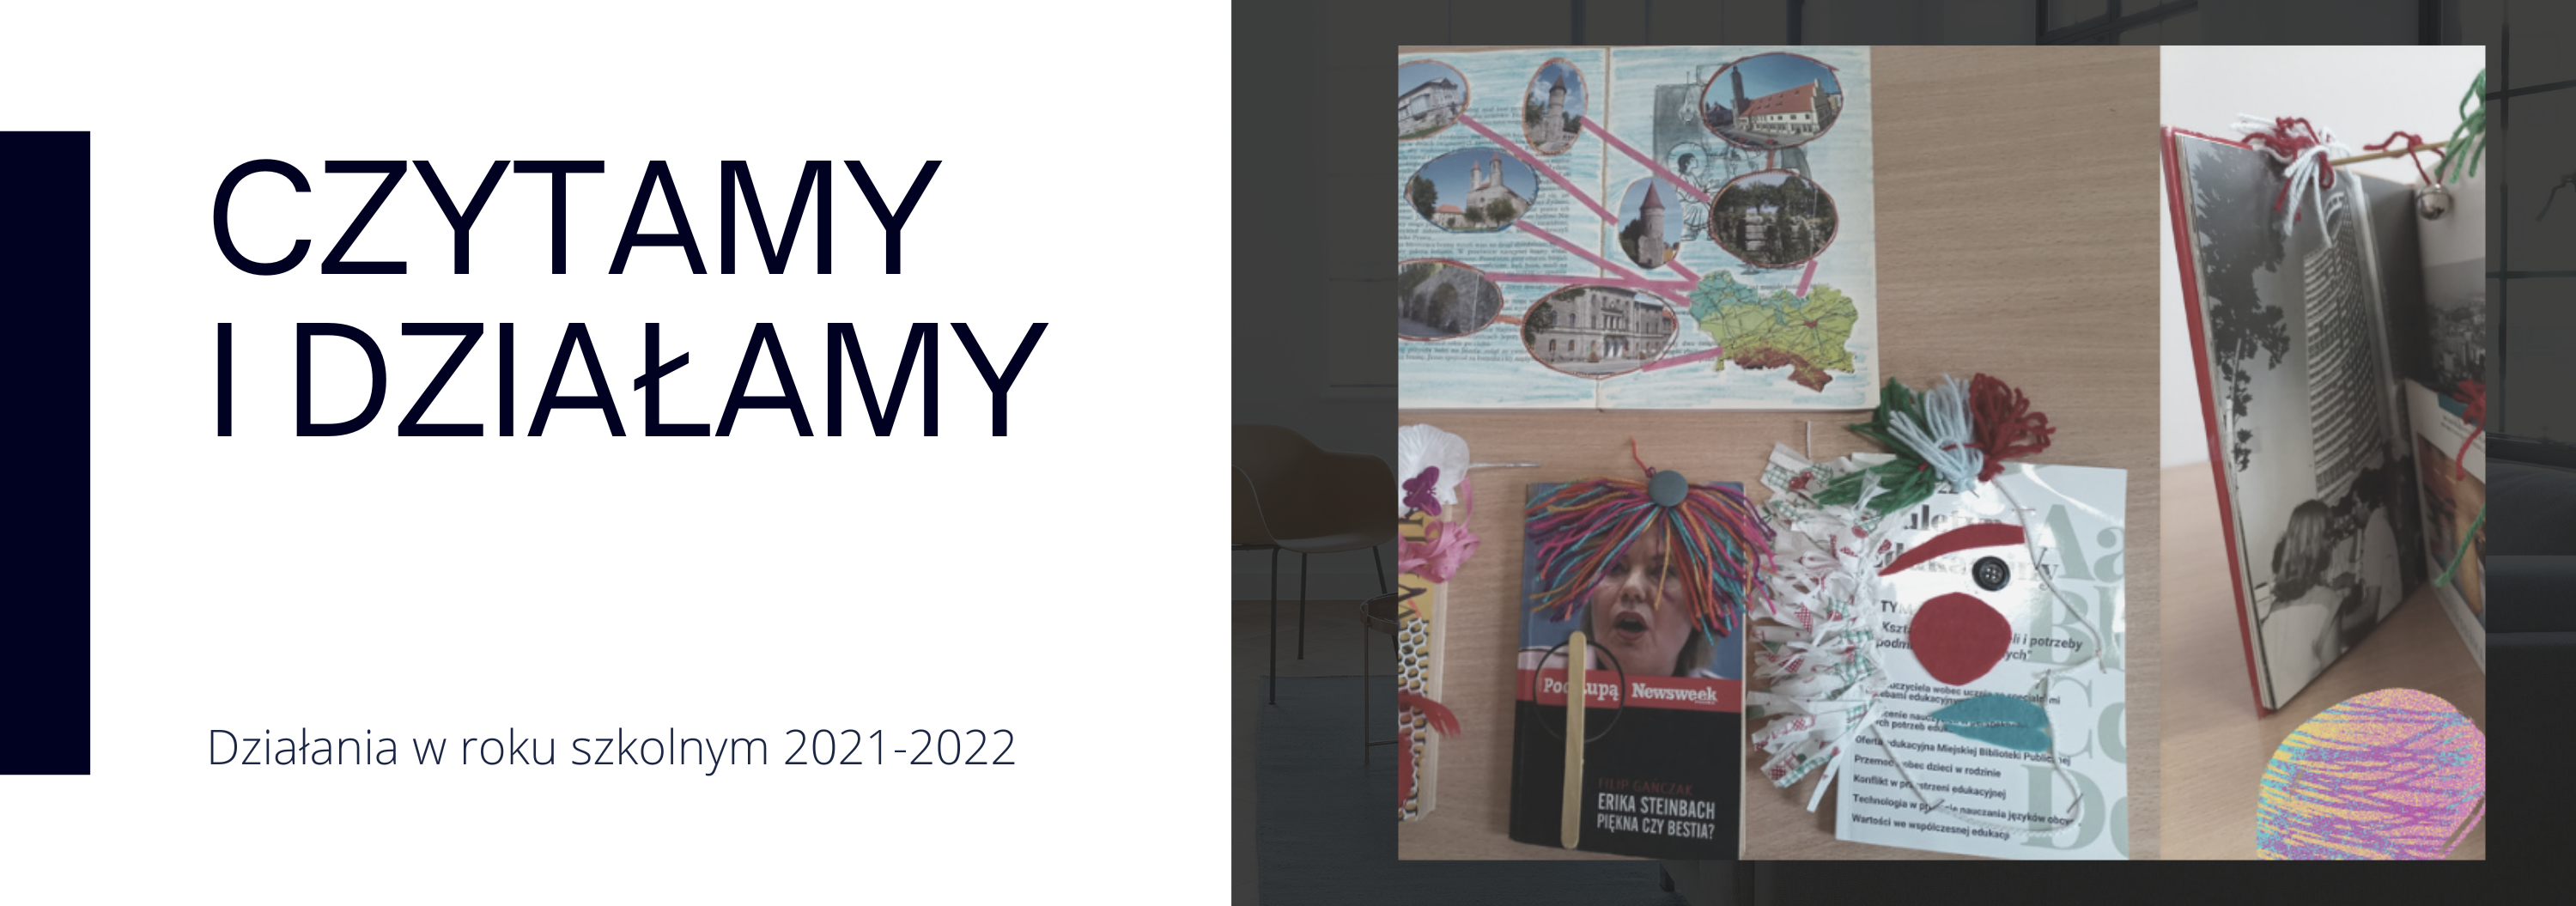 Działania proczytelnicze biblioteki Czytamy i działamy: rok szkolny 2021-2022